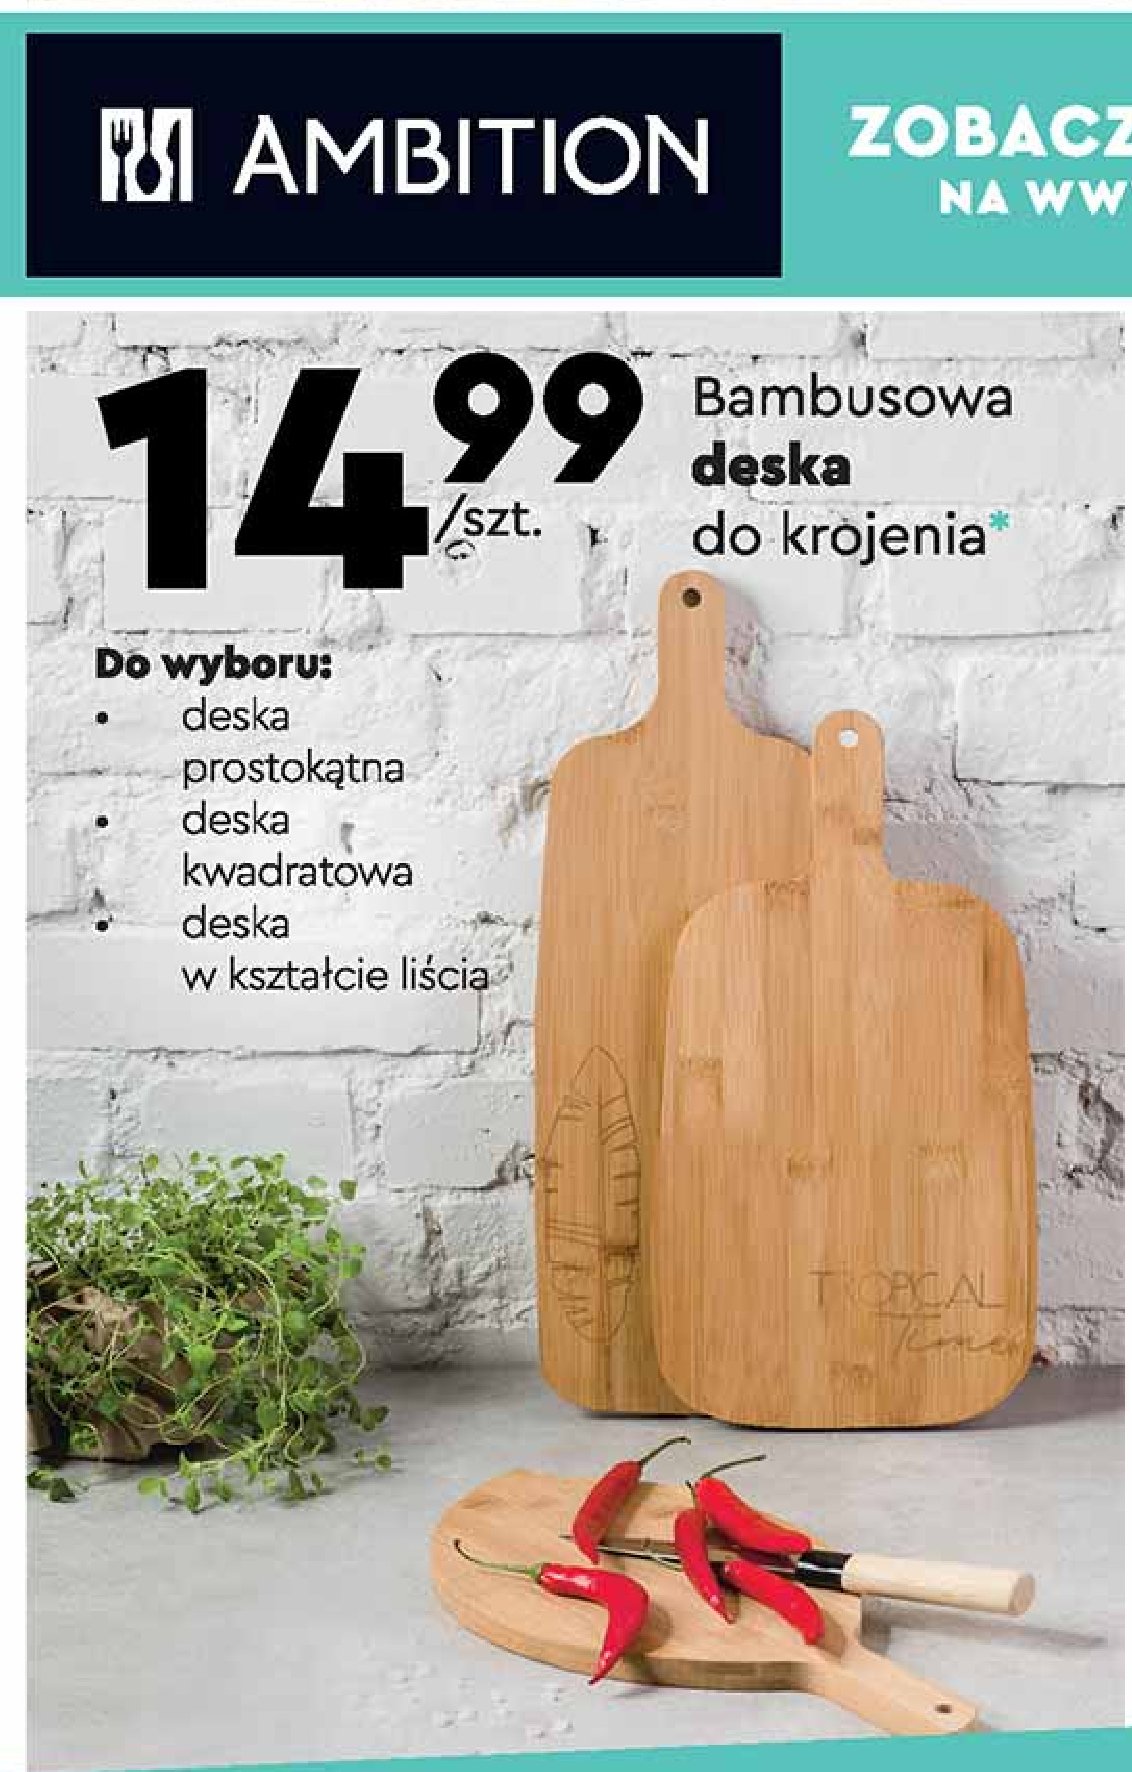 Deska bamusowa w kształcie liścia Ambition promocja